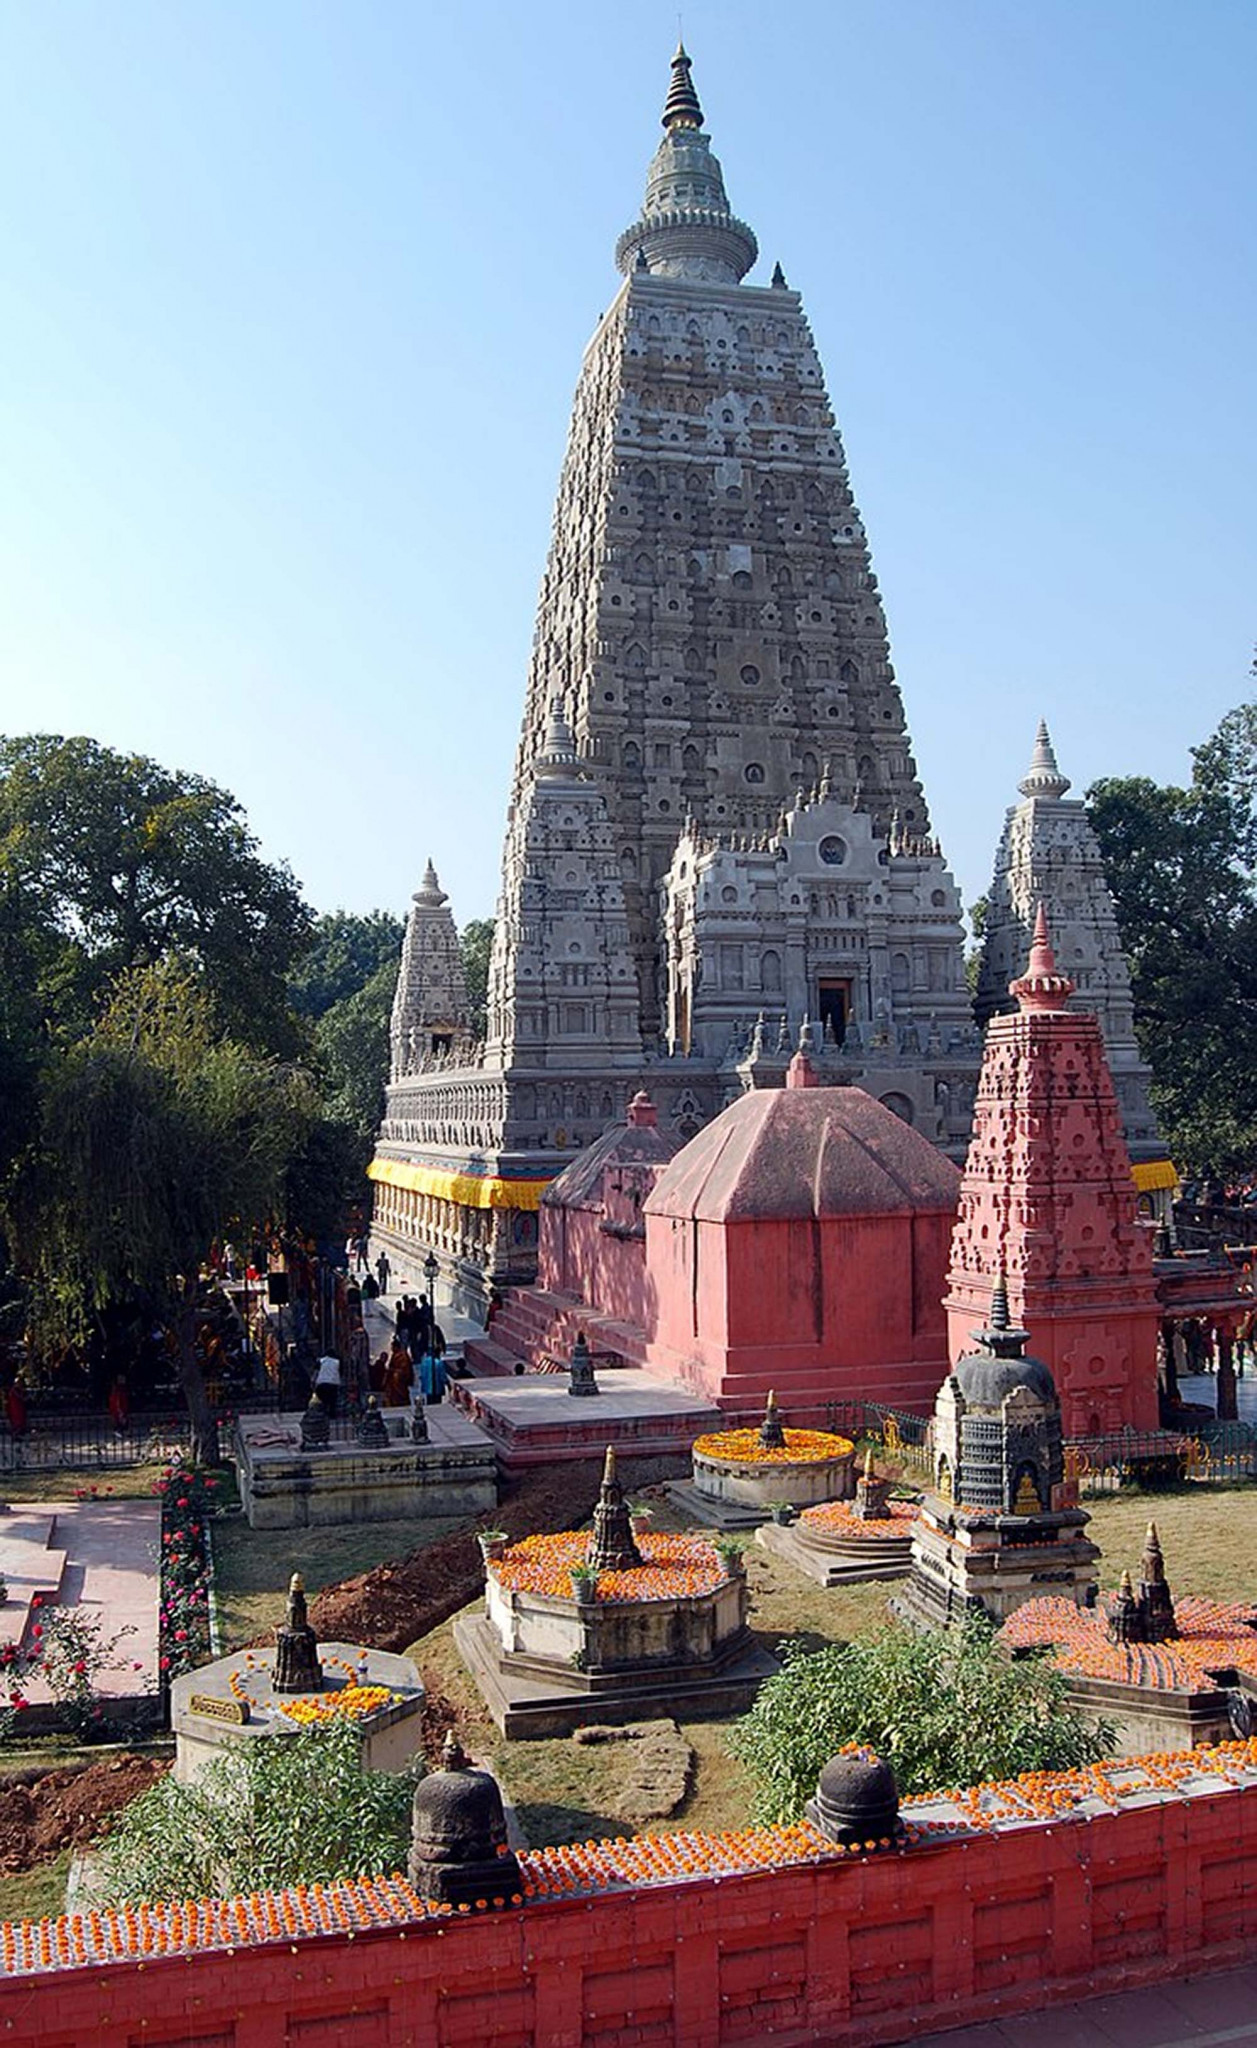 Mahabodhi temple, Bodhgaya, India
